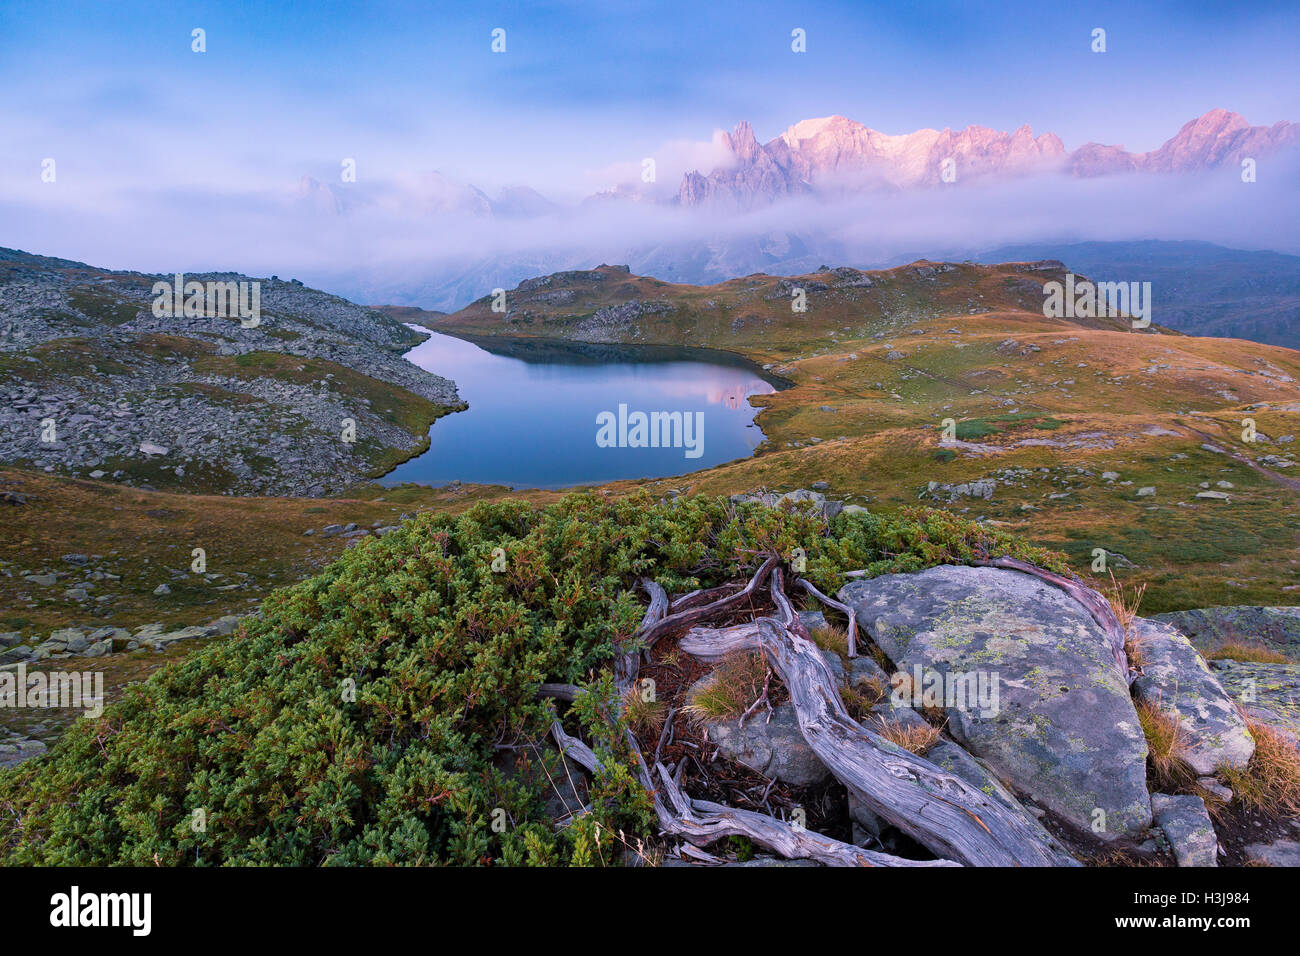 Paysage panoramique vue sur Green Meadows, Juniperus plante ; lac alpin bleu, les nuages, les sommets des montagnes. Vallée de la Clarée. Névache, Hautes Alpes. Banque D'Images